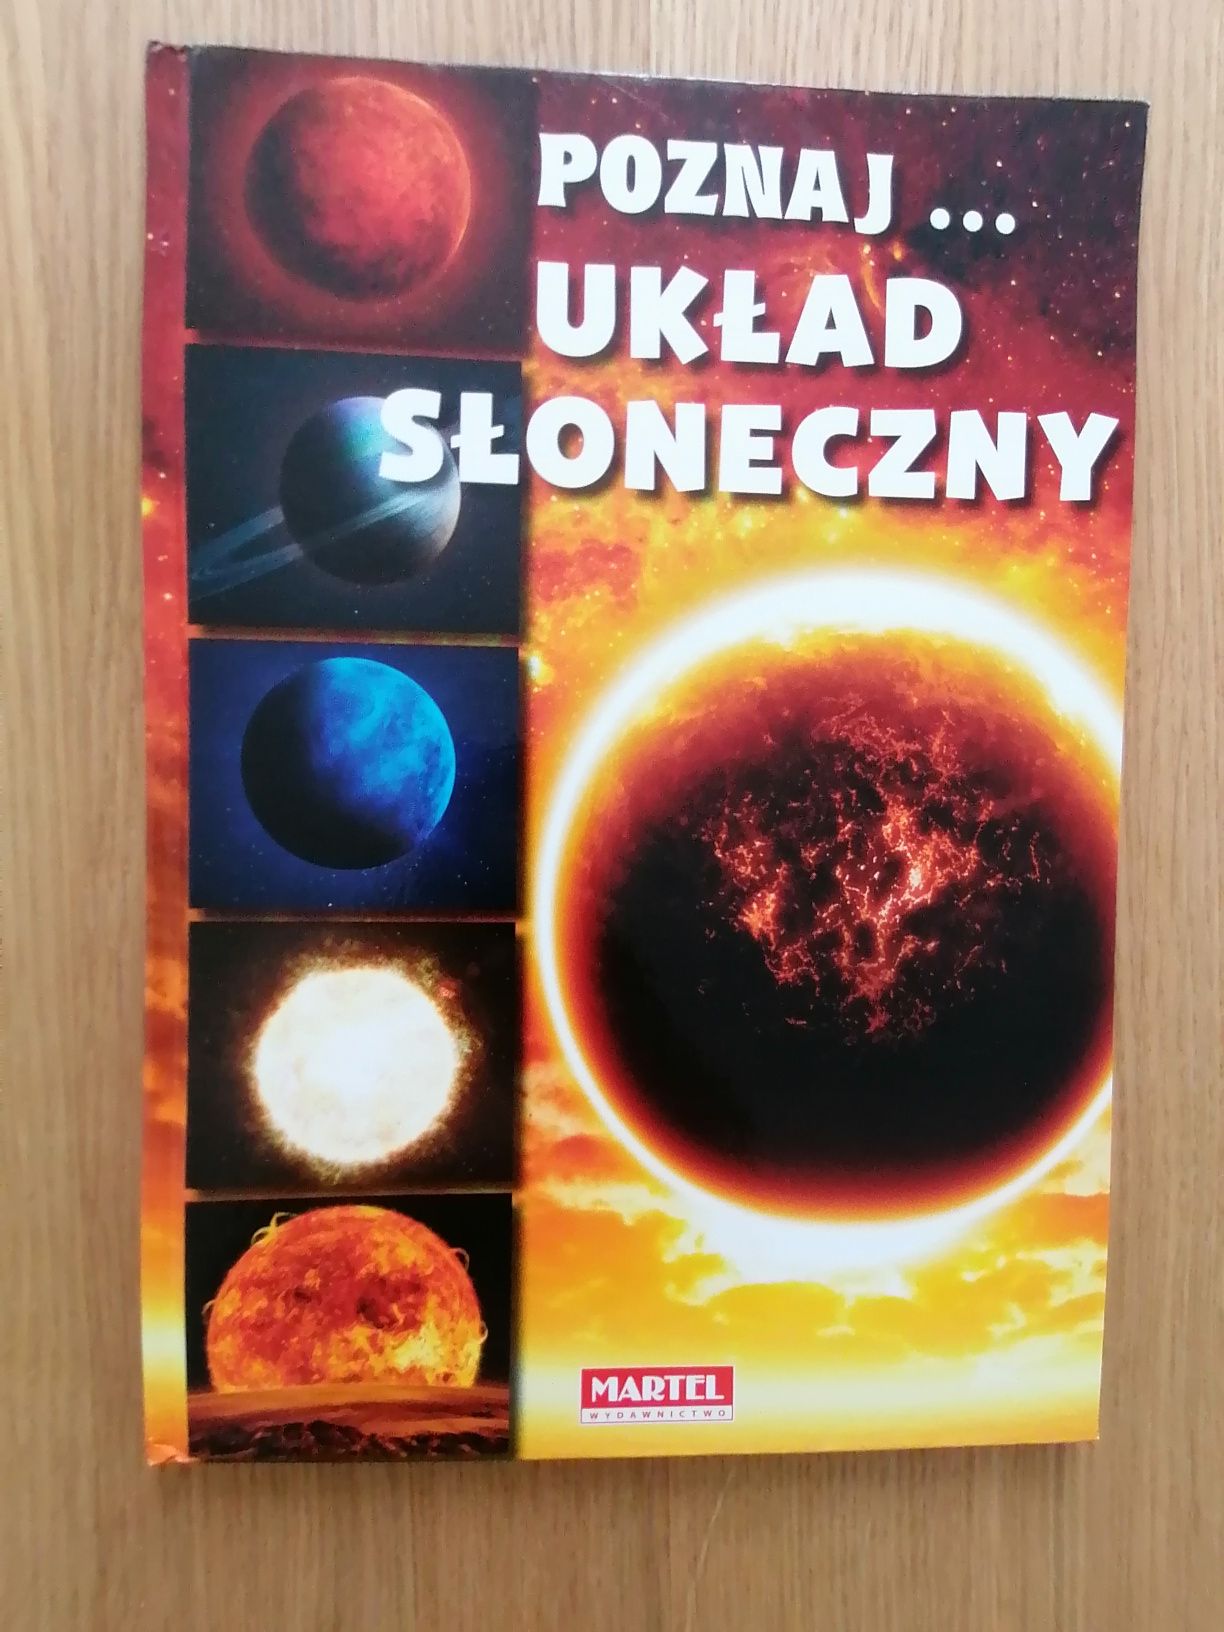 Książka dla dzieci "Poznaj układ słoneczny"